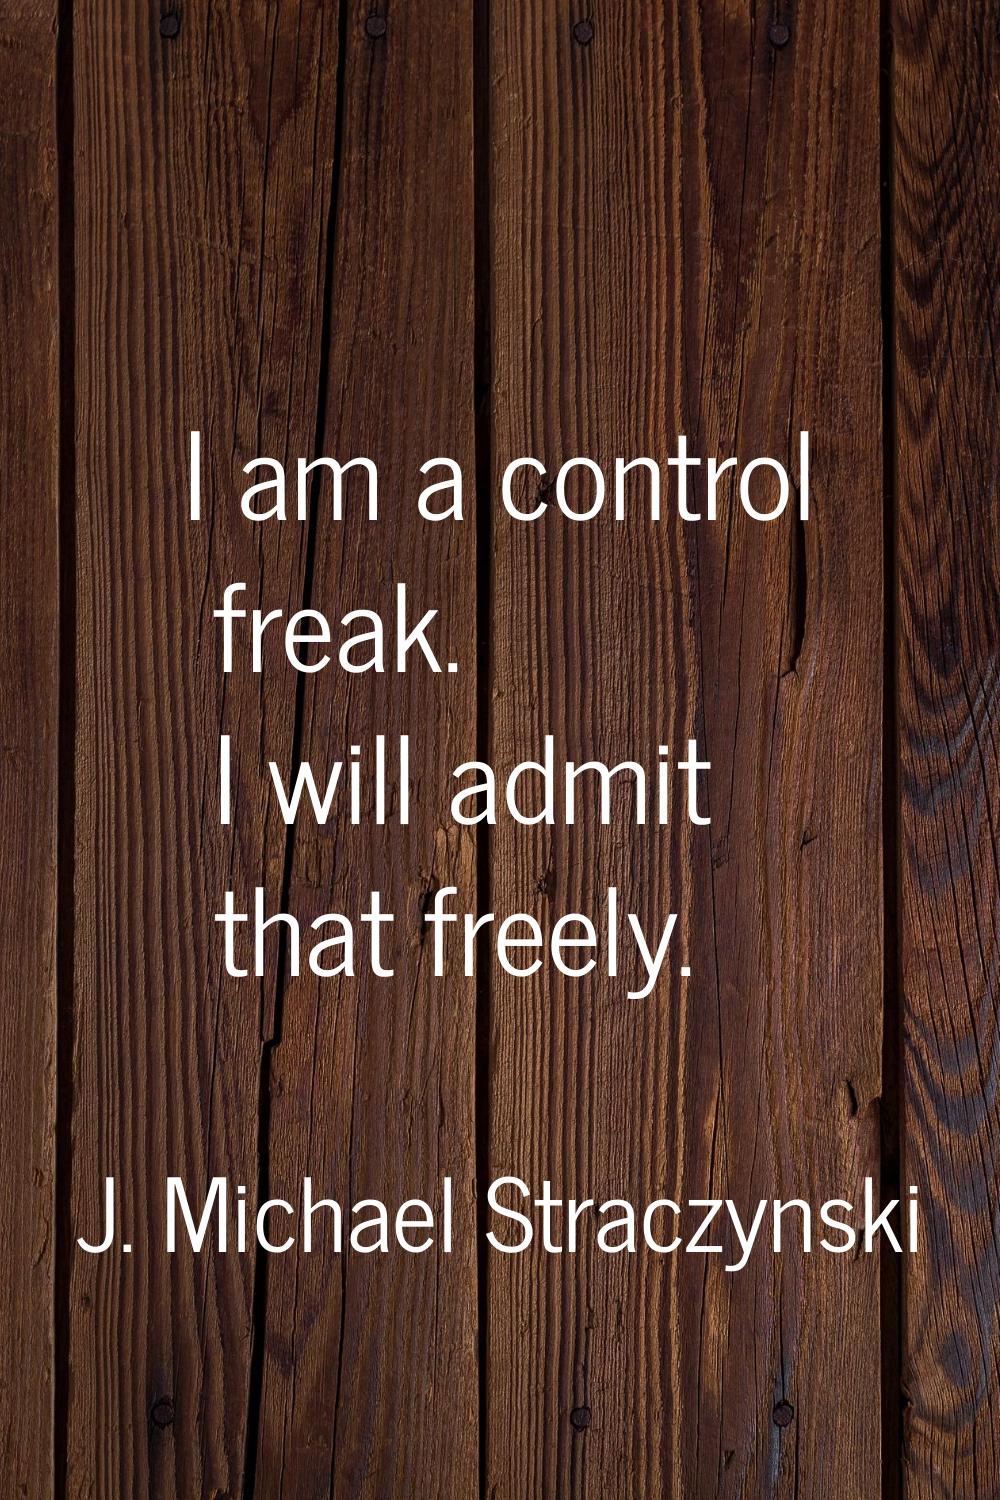 I am a control freak. I will admit that freely.